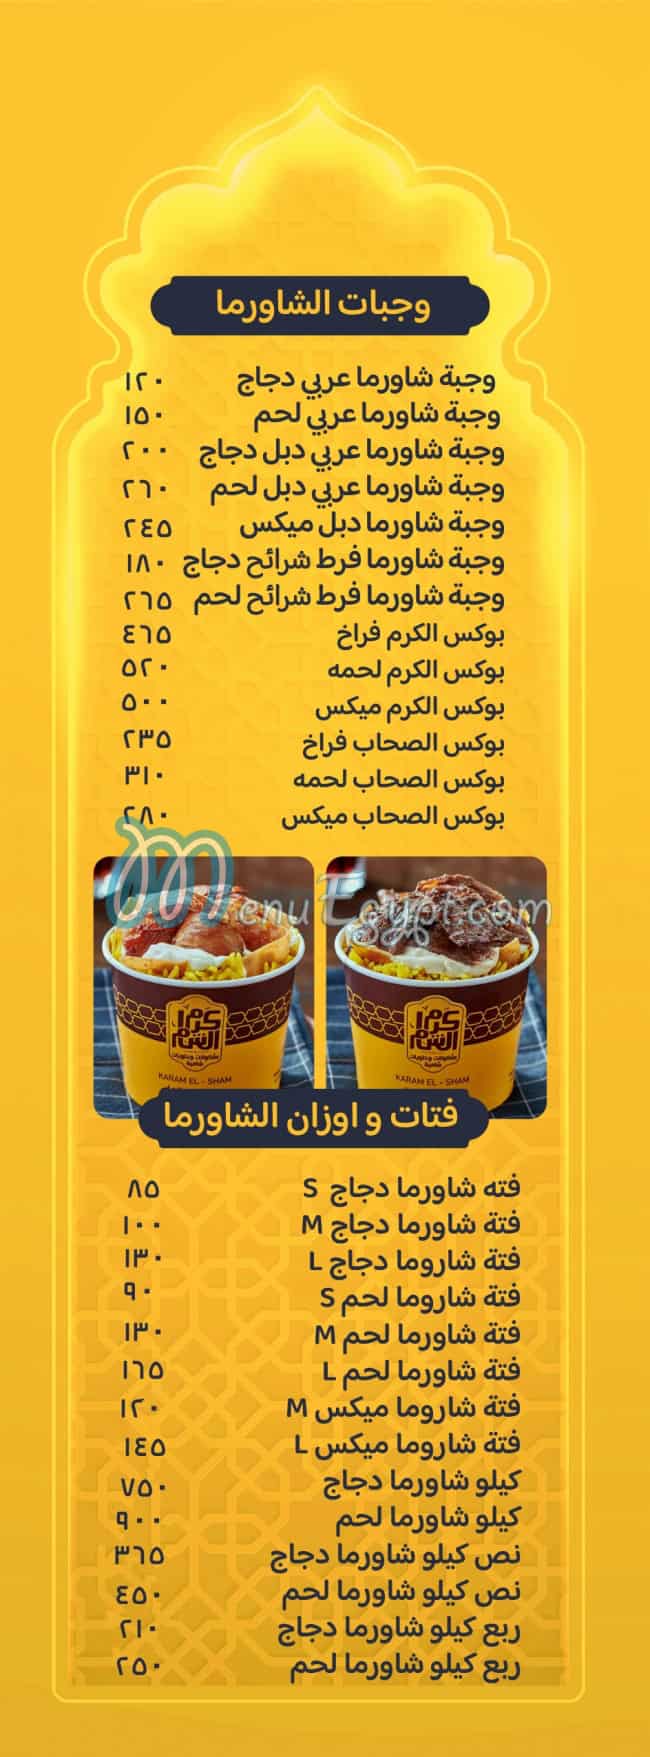 Karam El Sham menu prices